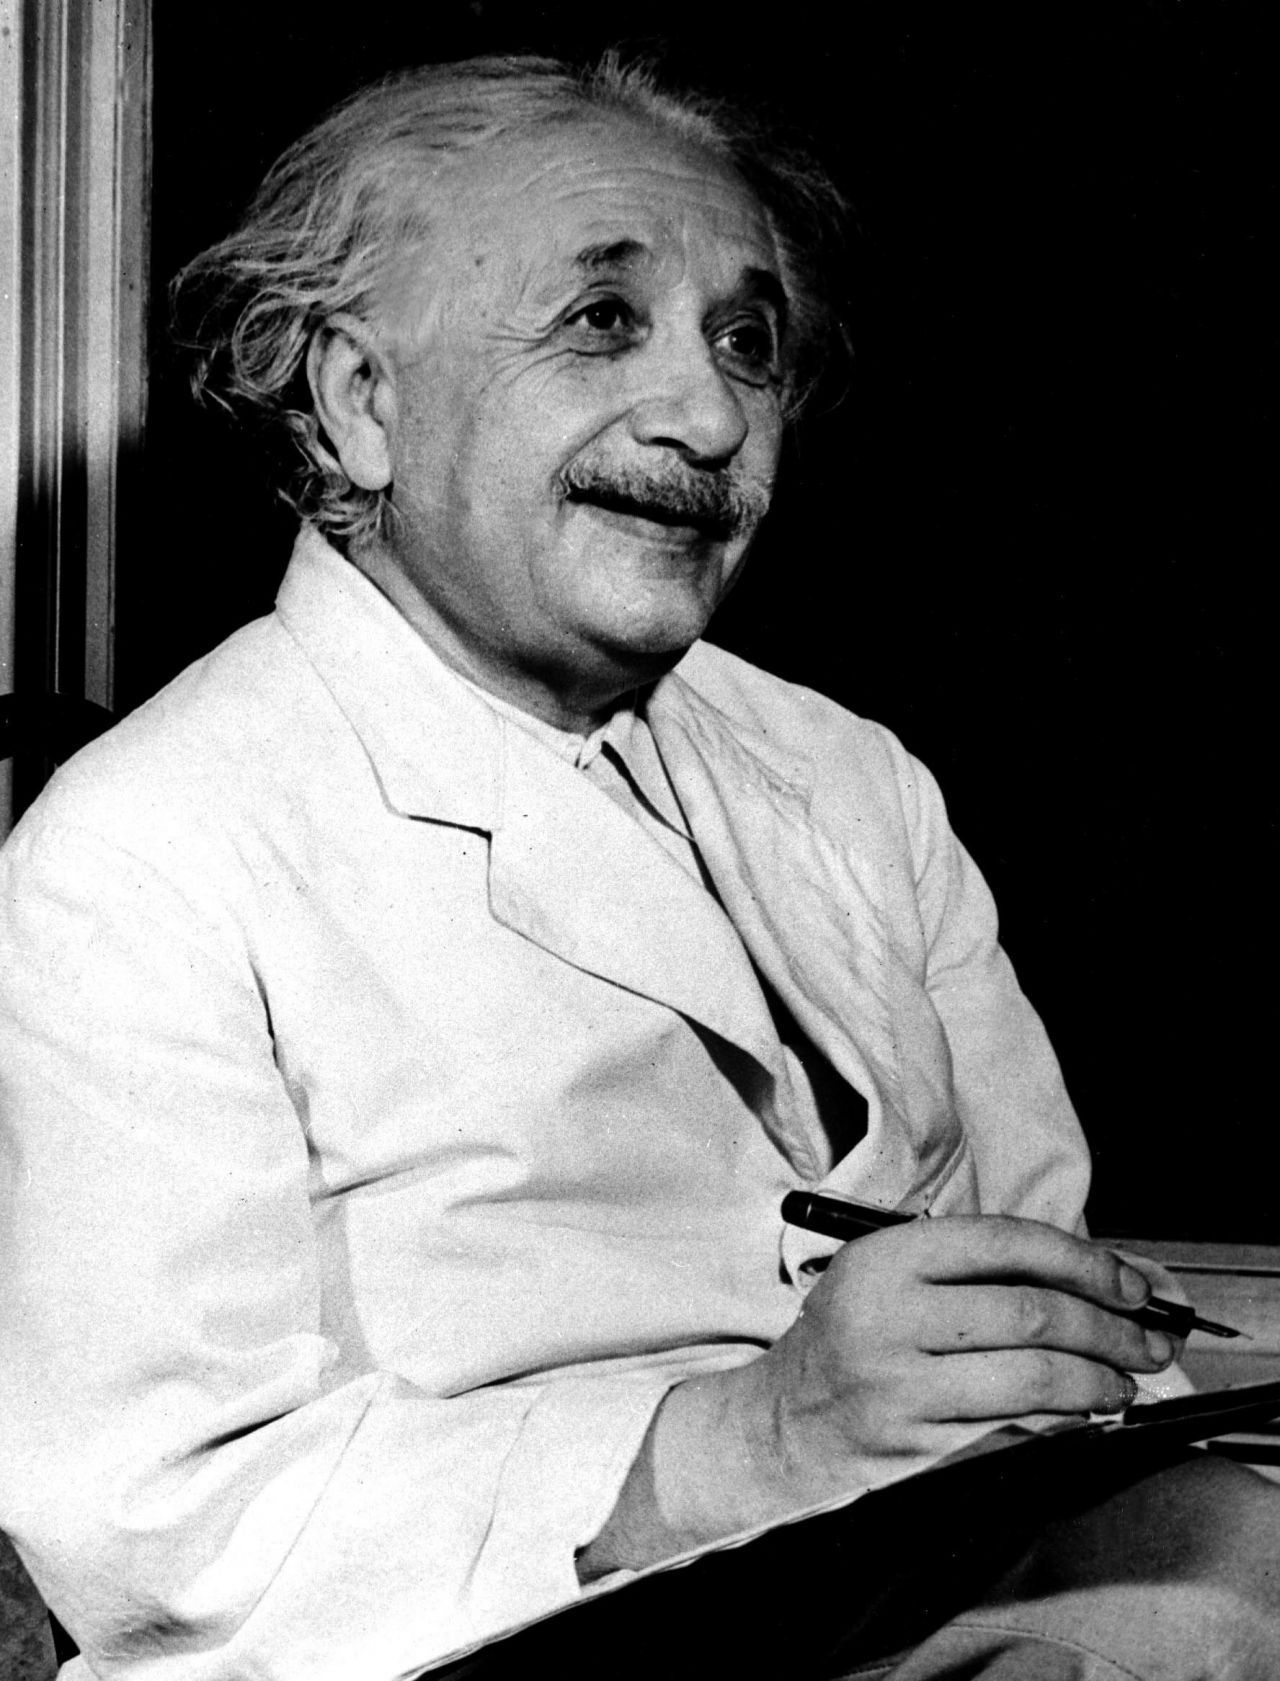 Albert Einstein (1879-1955) gilt bis heute als einer der besten Physiker aller Zeiten - und als Inbegriff des Genies. Als Schüler war er jedoch aufmüpfig, verließ eine Schule und brauchte mehrere Anläufe, um seine Schullaufbahn erfolgreich abzuschließen. 